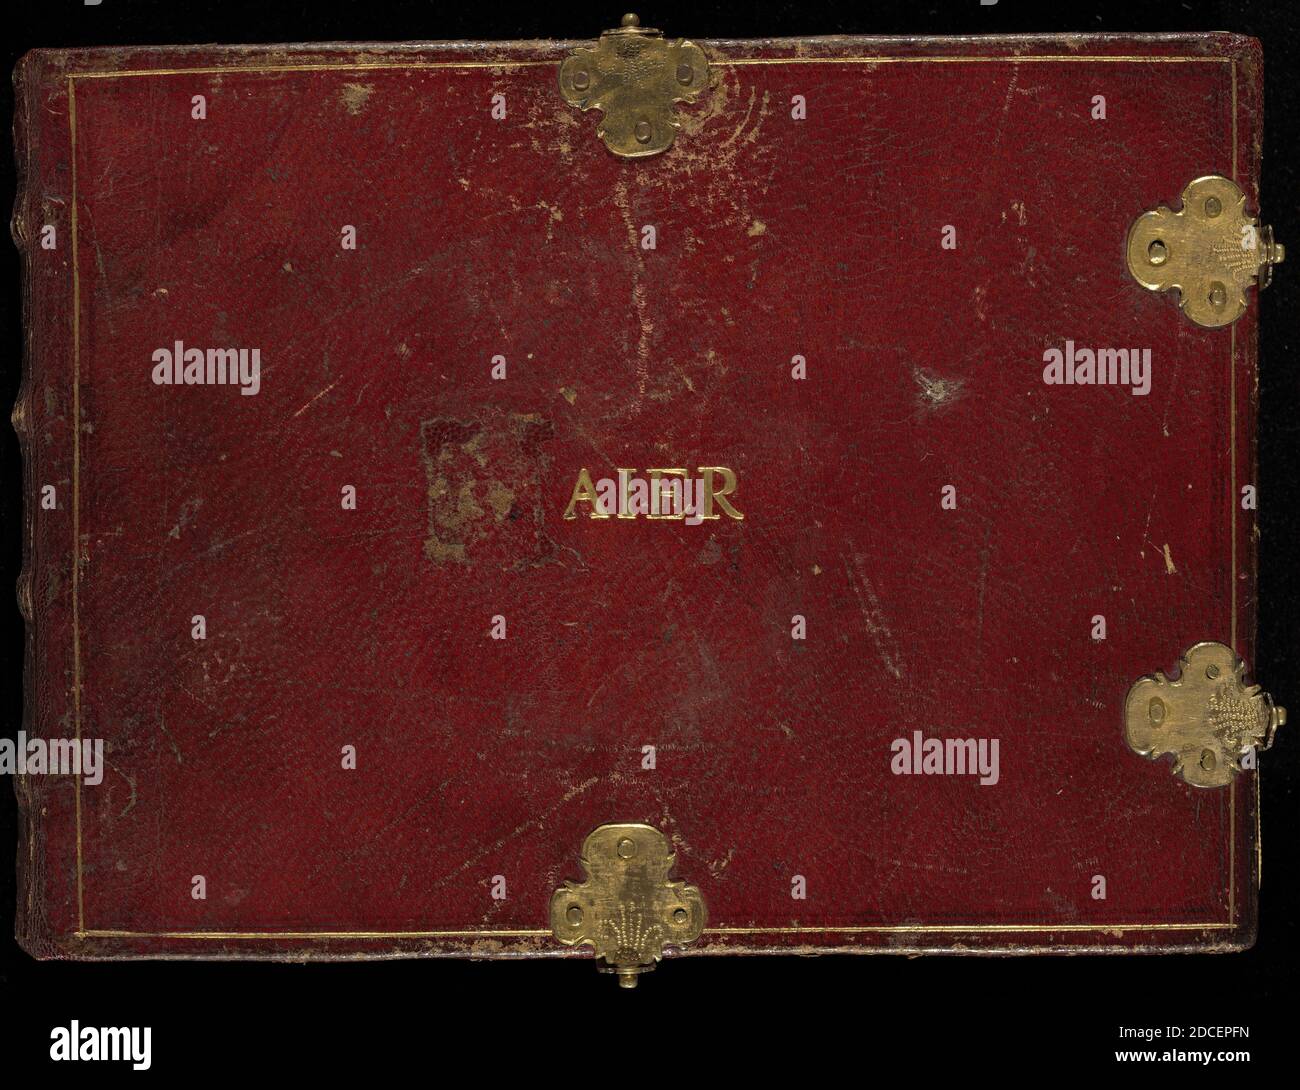 Joris Hoefnagel, (artista), flamenco, 1542 - 1600, Animalia Volatilia et Amphibia (AIEr), volumen IV, (ver discos separados para la serie 1-72), (serie), c. 1575/1580, 1 vol: Ill: 70 dibujos (página de título incl.) en acuarela y gouache, con bordes óvalos dorados, en vellum, alternando con texto ms en papel; 2 placas (LXX y LXXI) con borde dorado solamente, tamaño de página (aproximado): 14.3 x 18.4 cm (5 5/8 x 7 1/4 pulg Foto de stock